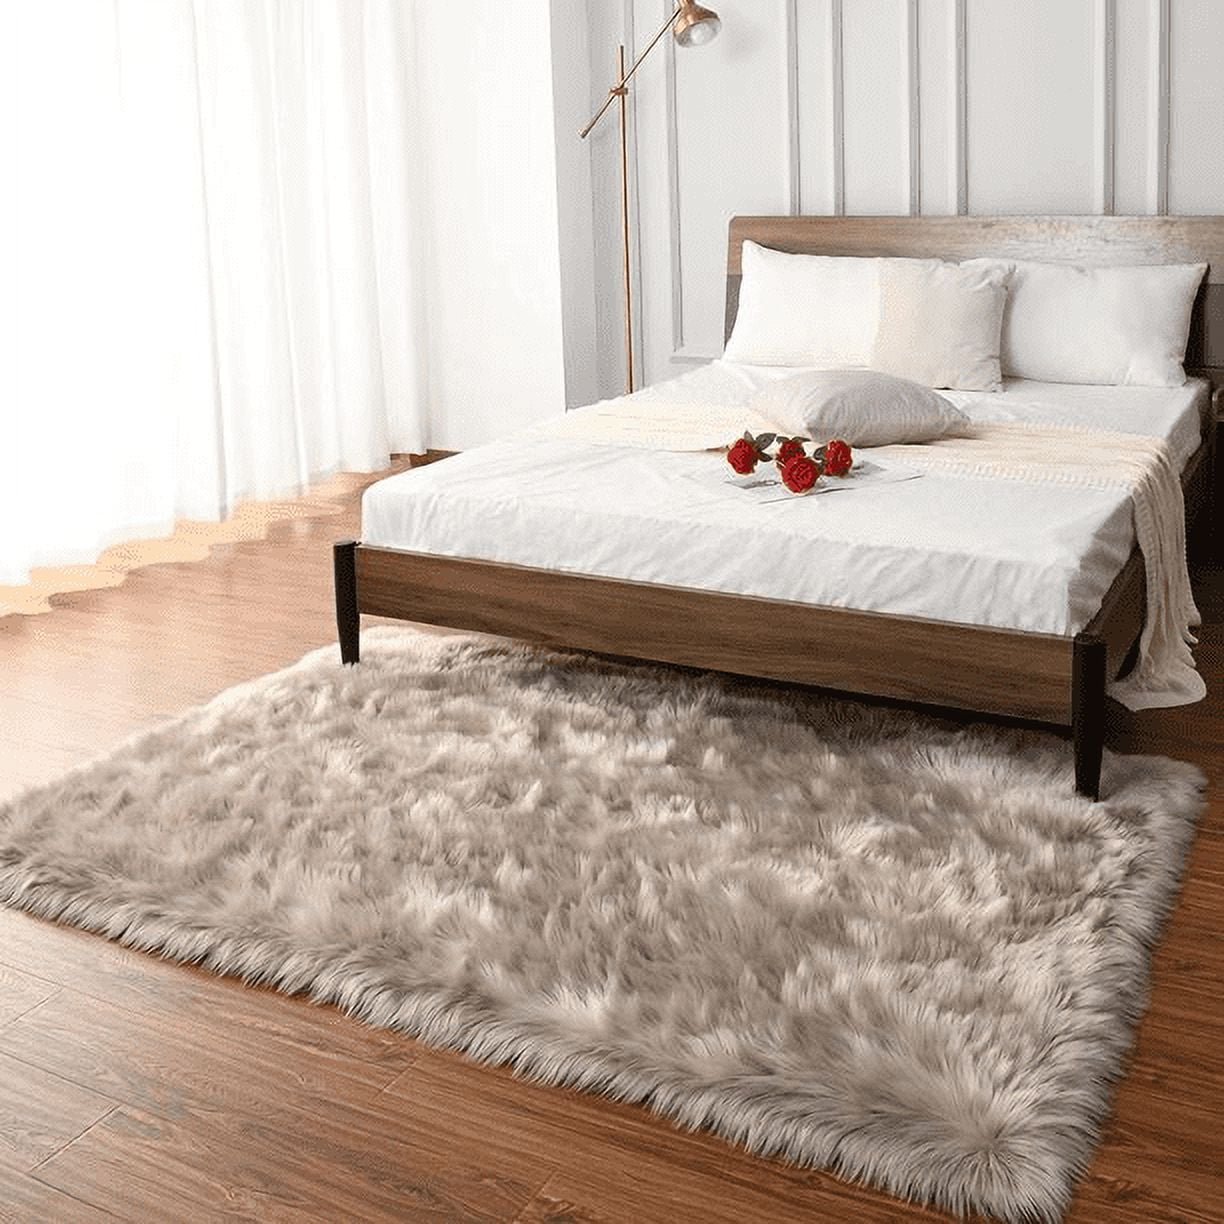 Sheepskin 19v78 Oval Rugs For Bedroom Bedside Living Room Carpet Nursery Washable Floor Mat, 2x3 Feet Pink